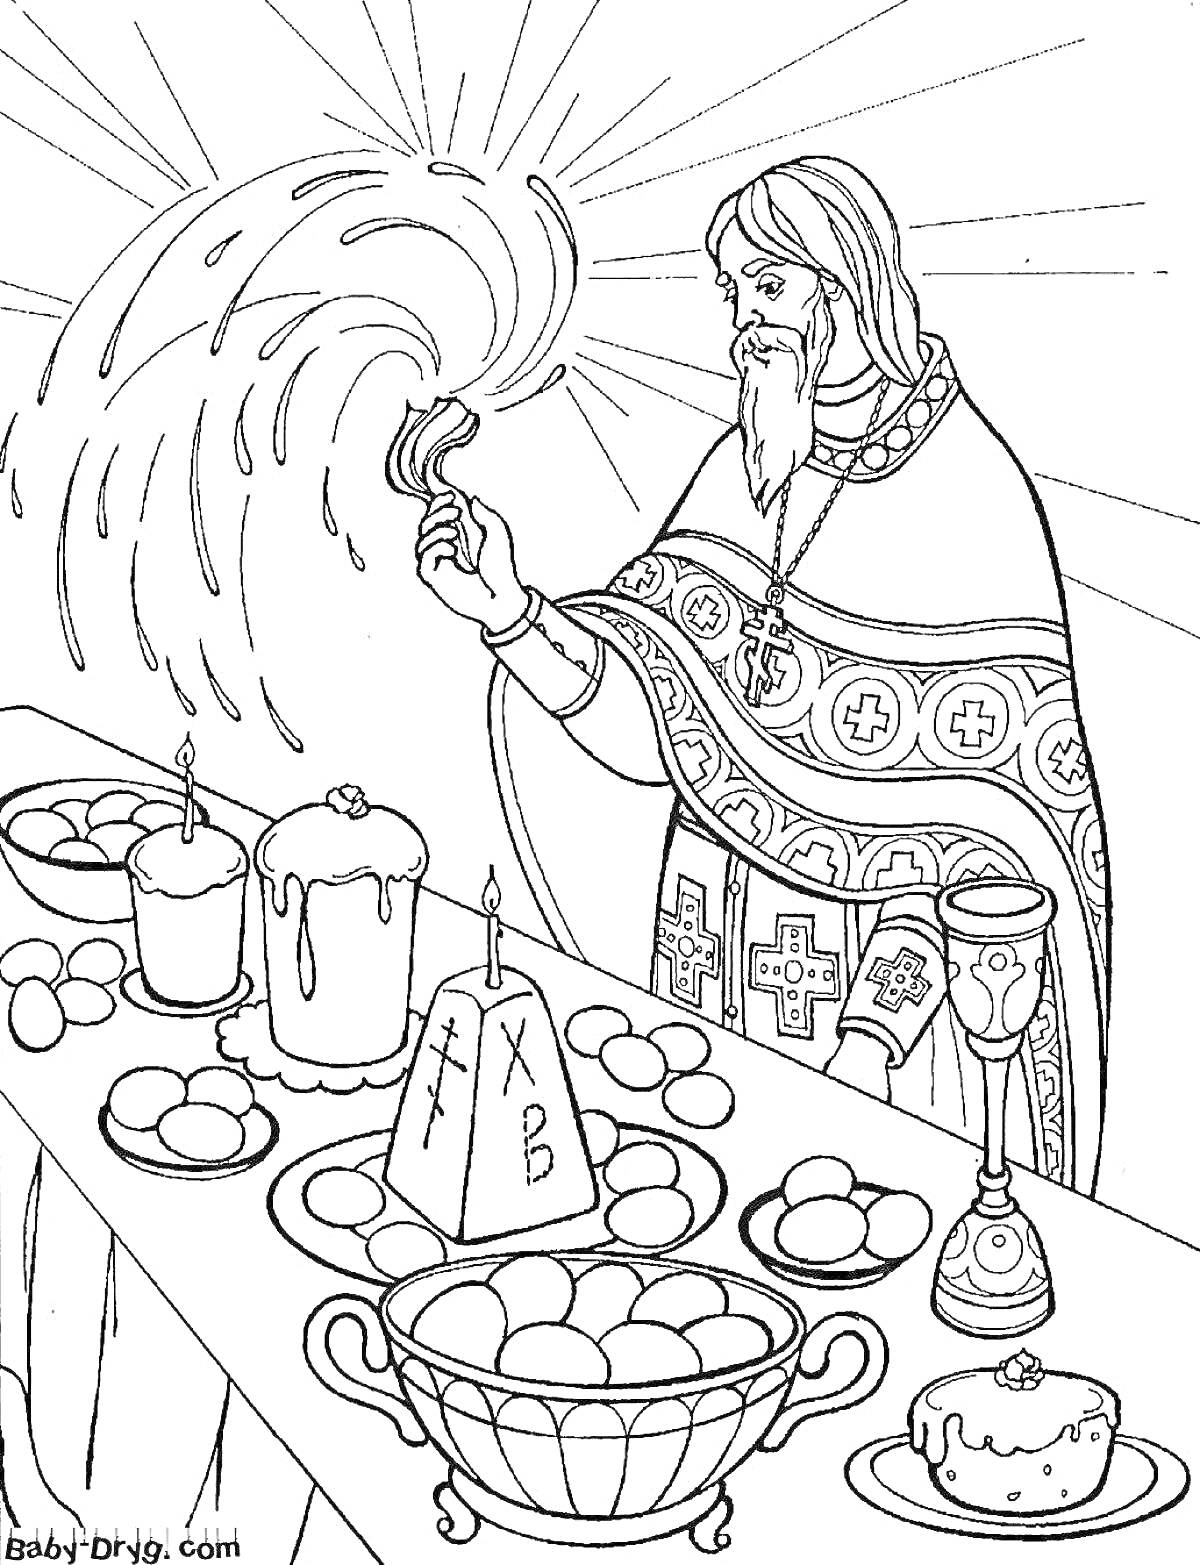 Освящение пасхальной трапезы. На изображении священник с кропилом проводит обряд освящения пасхальной еды, на столе стоят куличи, свечи, яйца и яйца в корзине, хлеб, чаша и вино.